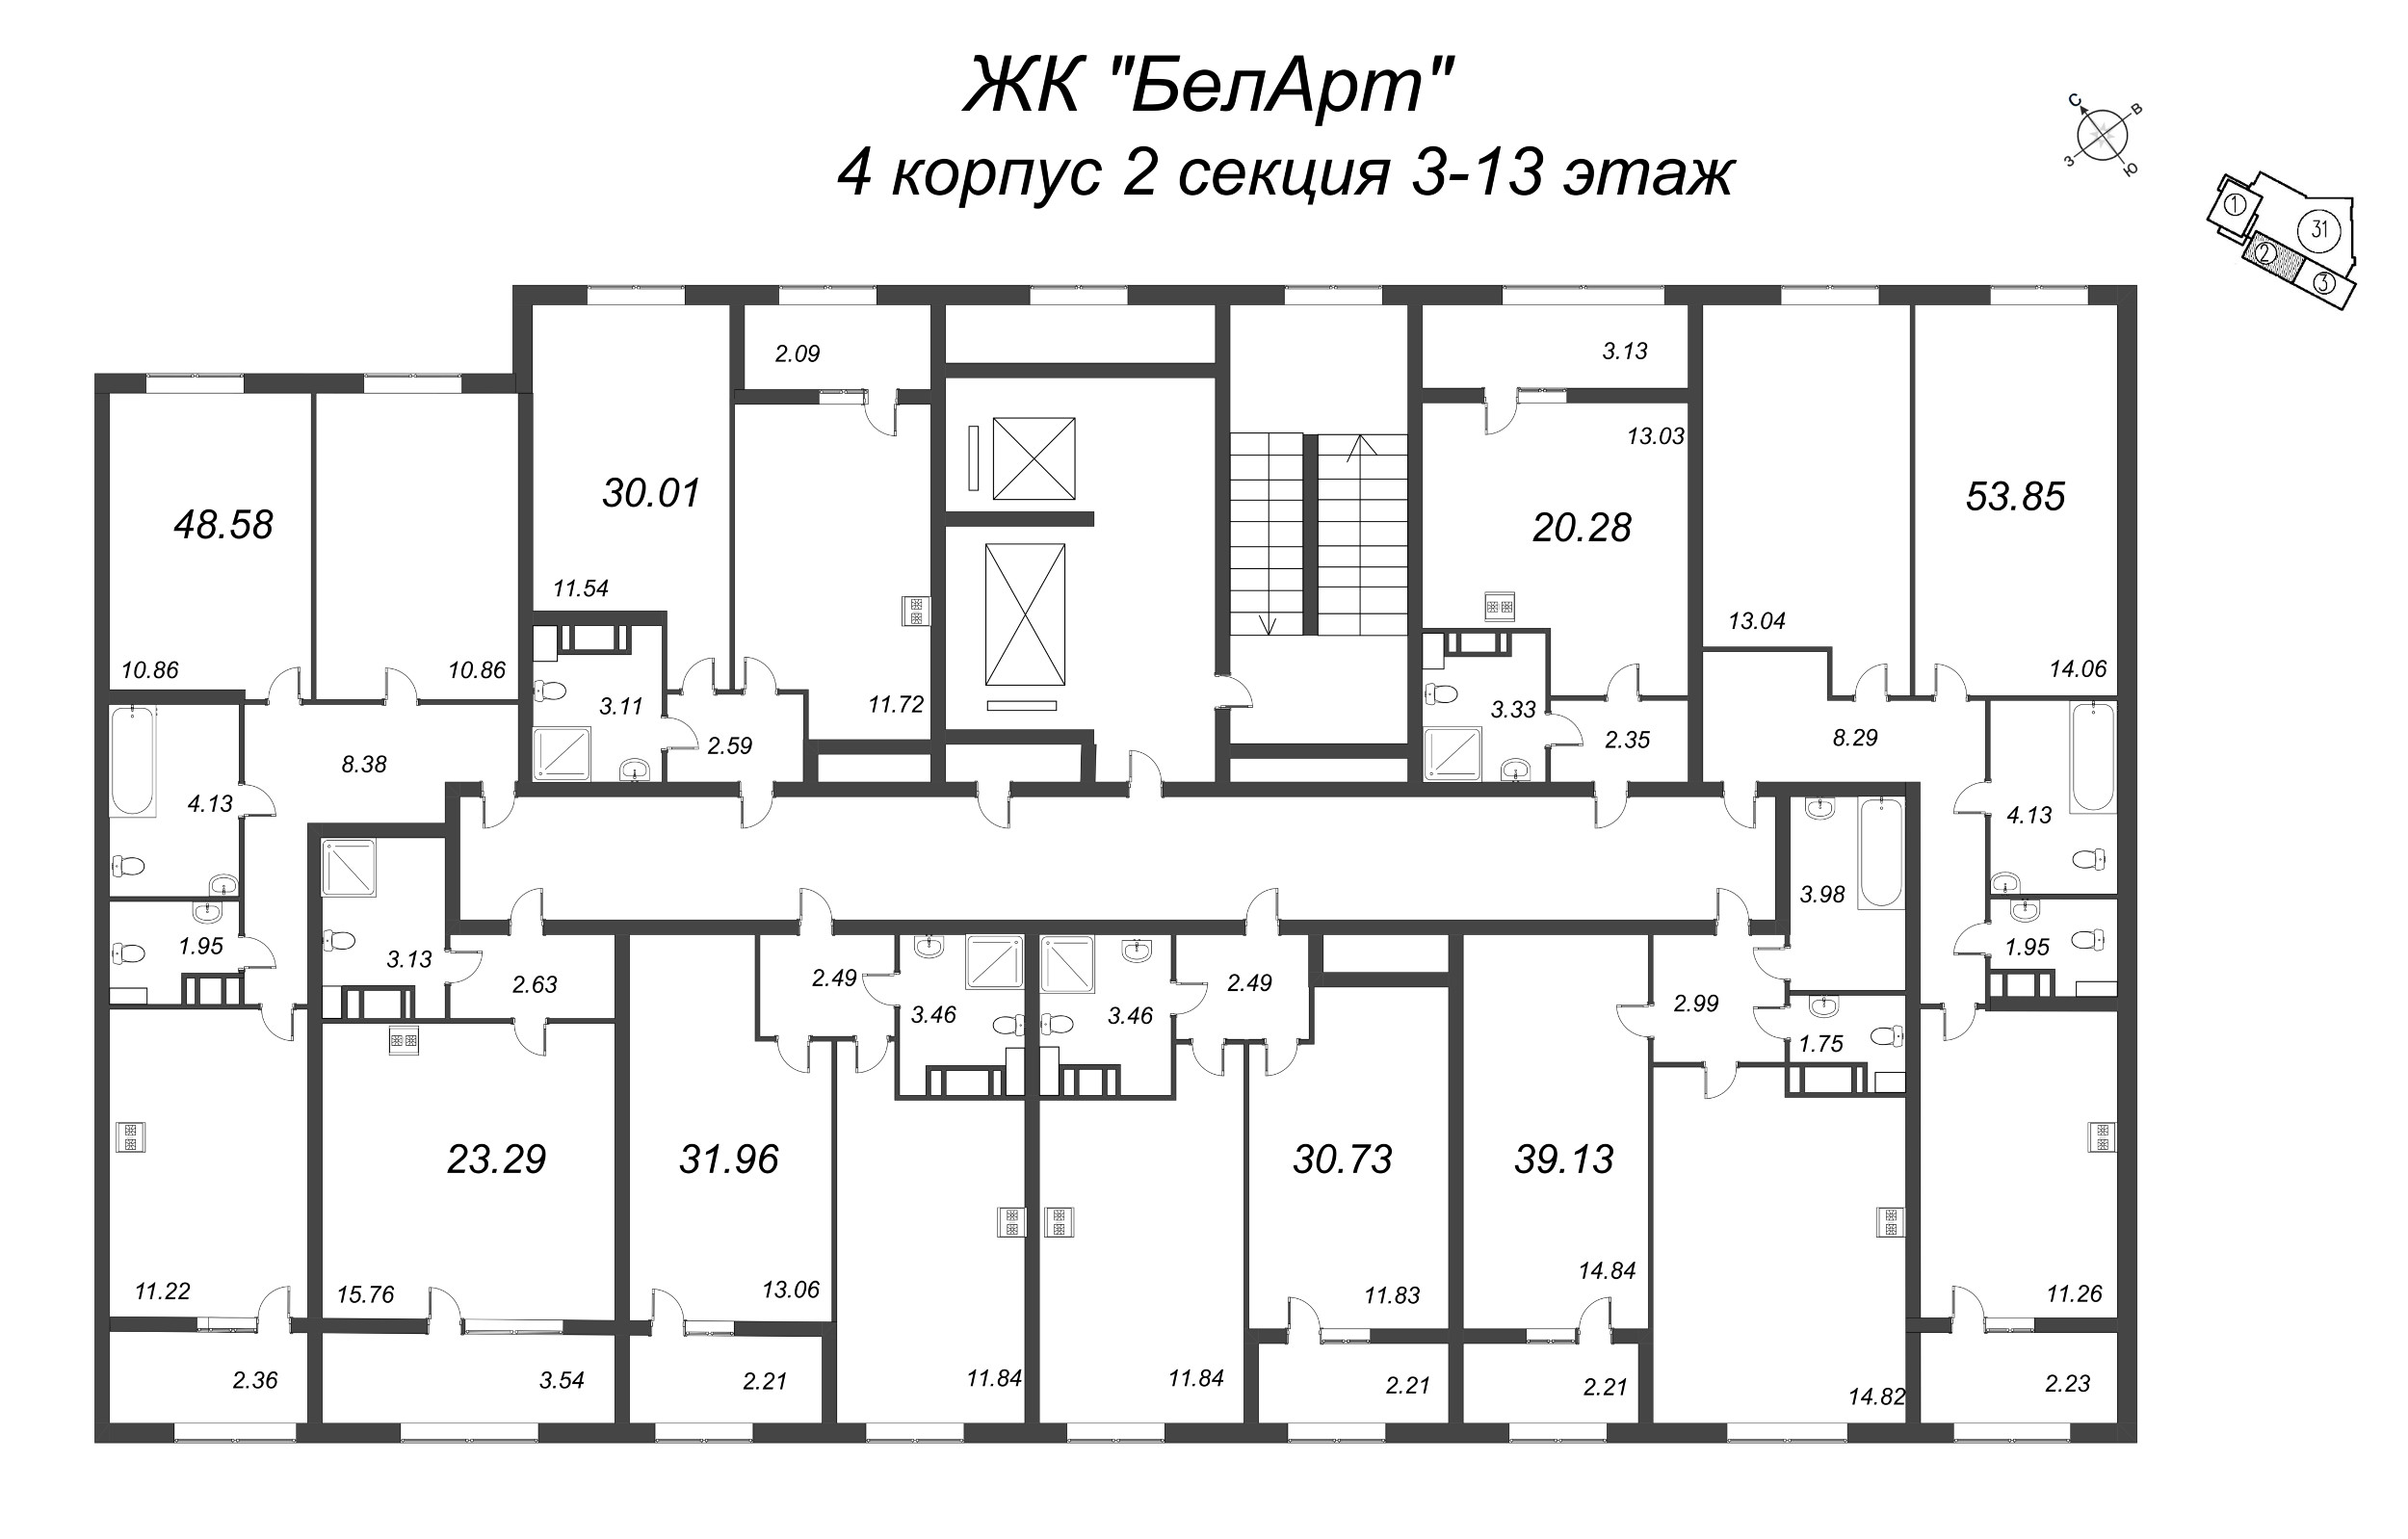 Квартира-студия, 23.29 м² в ЖК "БелАрт" - планировка этажа